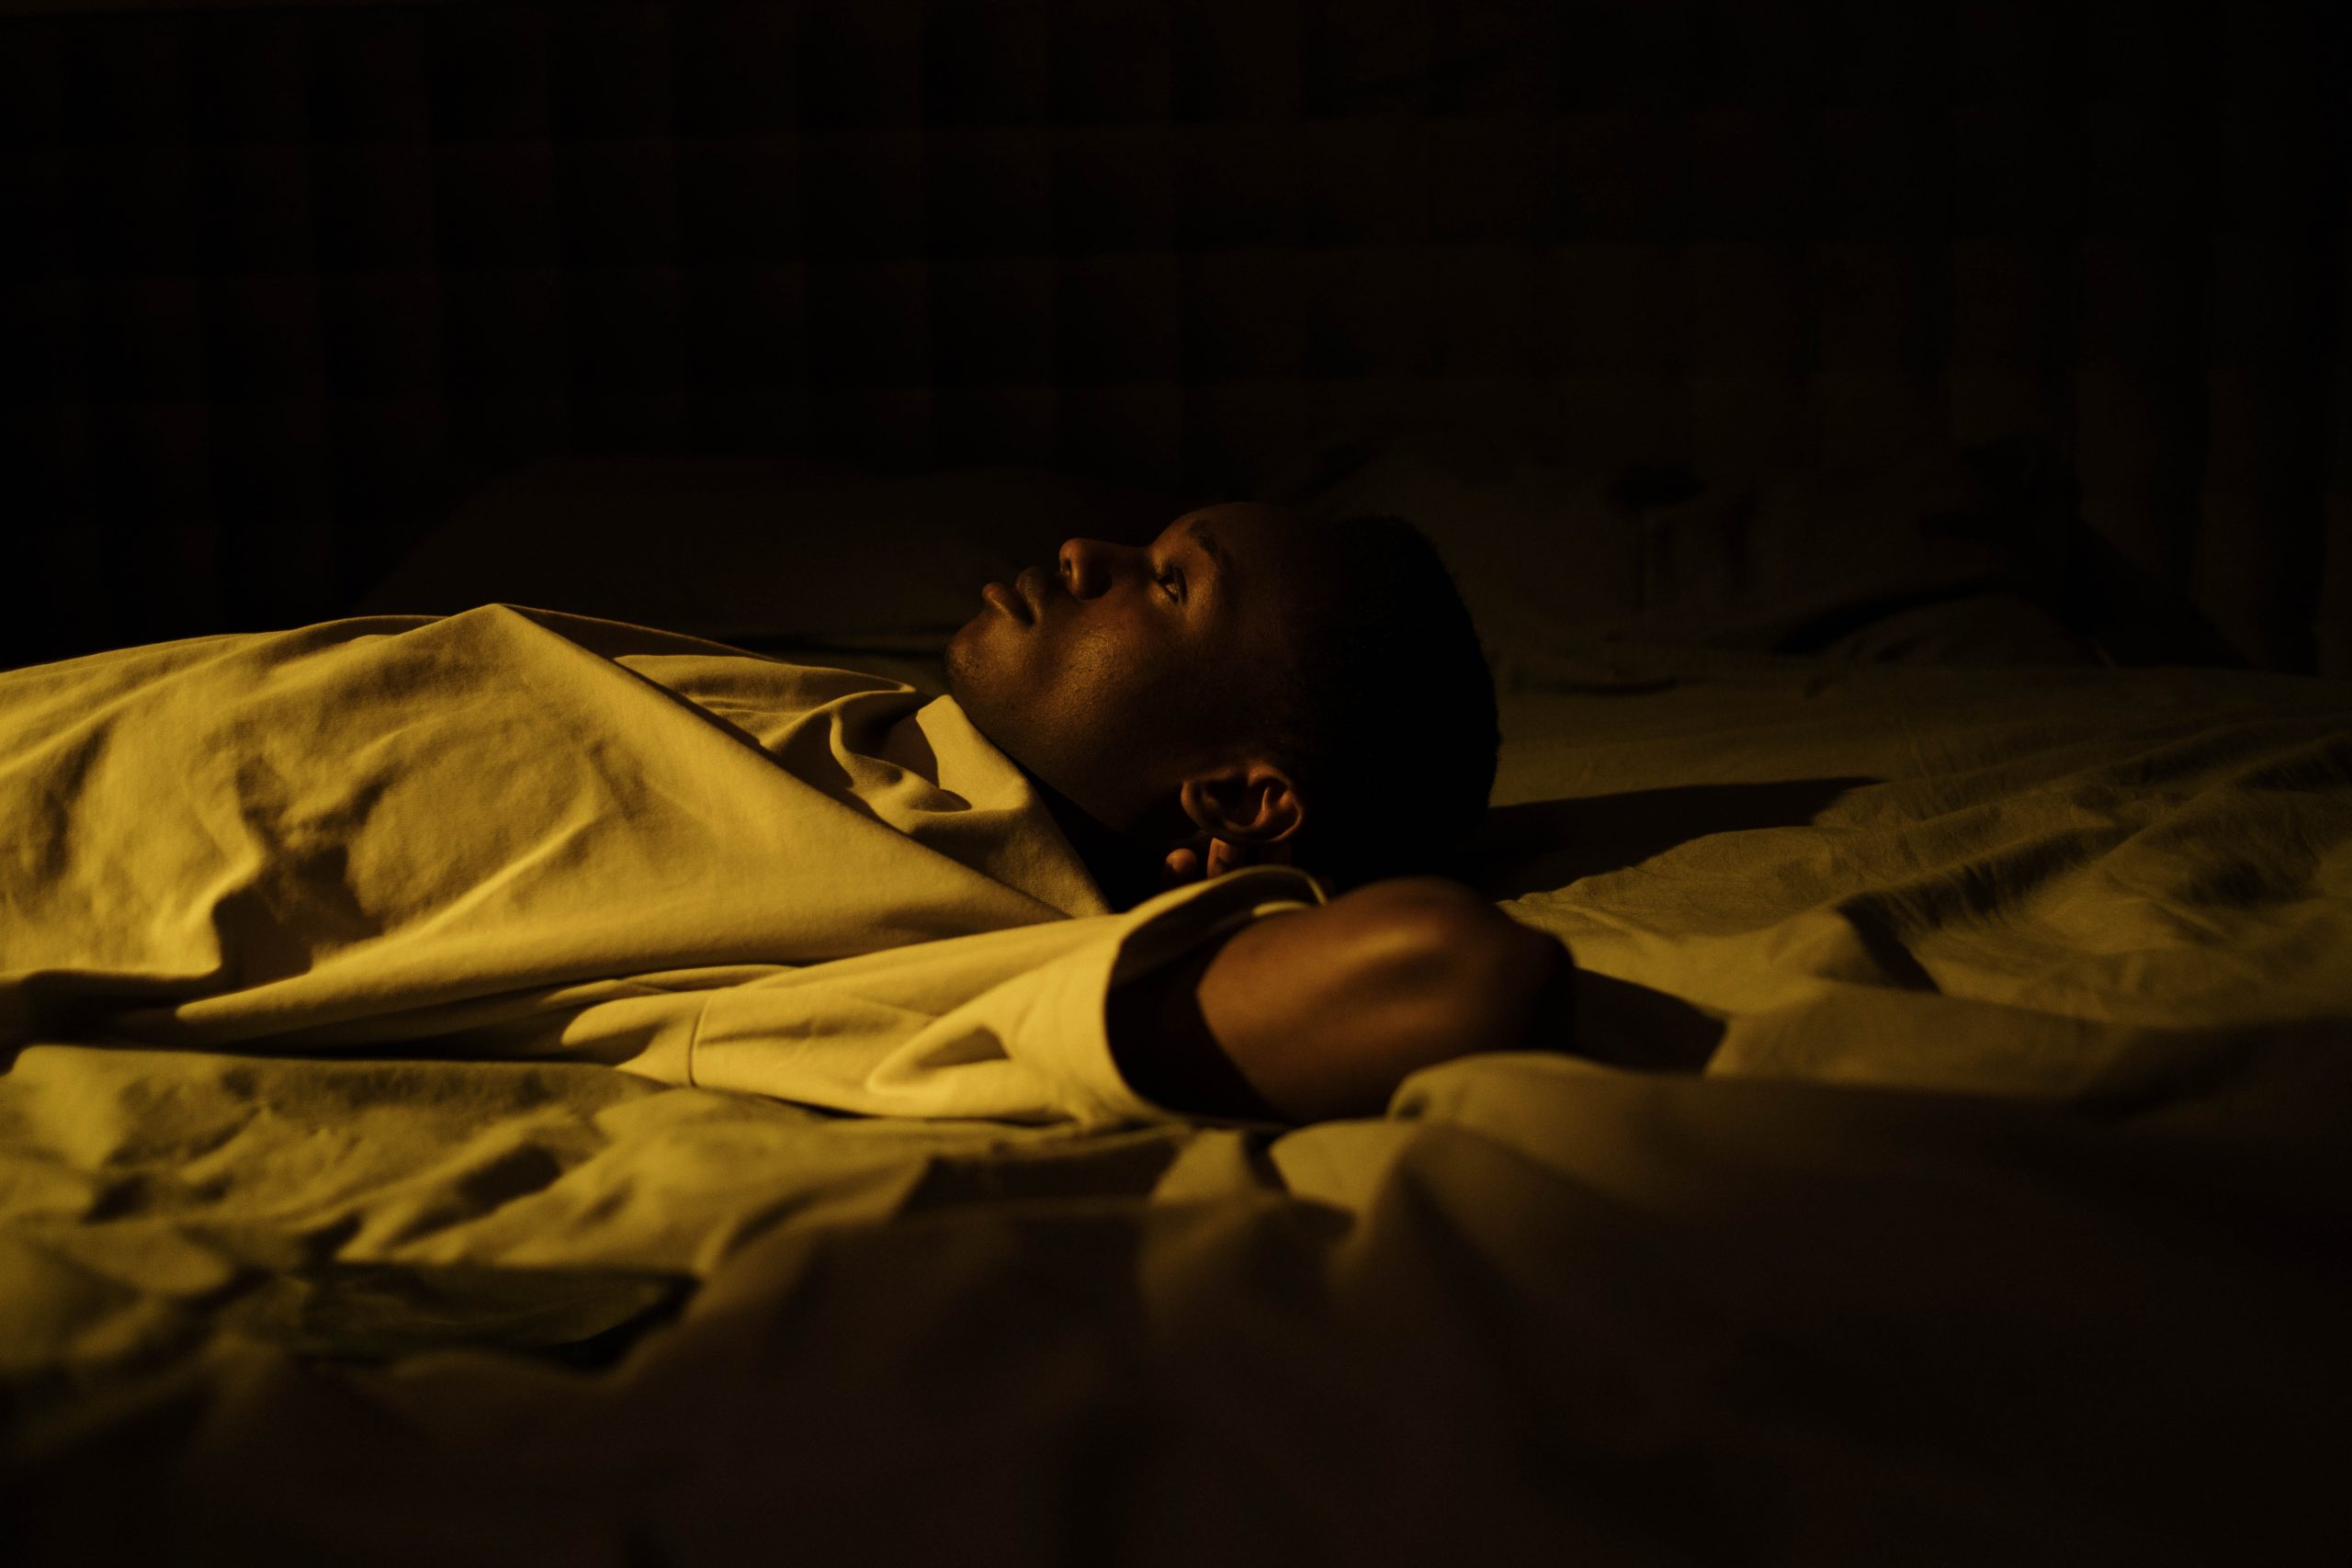 Un homme noir allongé sur un lit, les bras croisés derrière la tête, réveille, habillé en blanc dans une lumière jaune